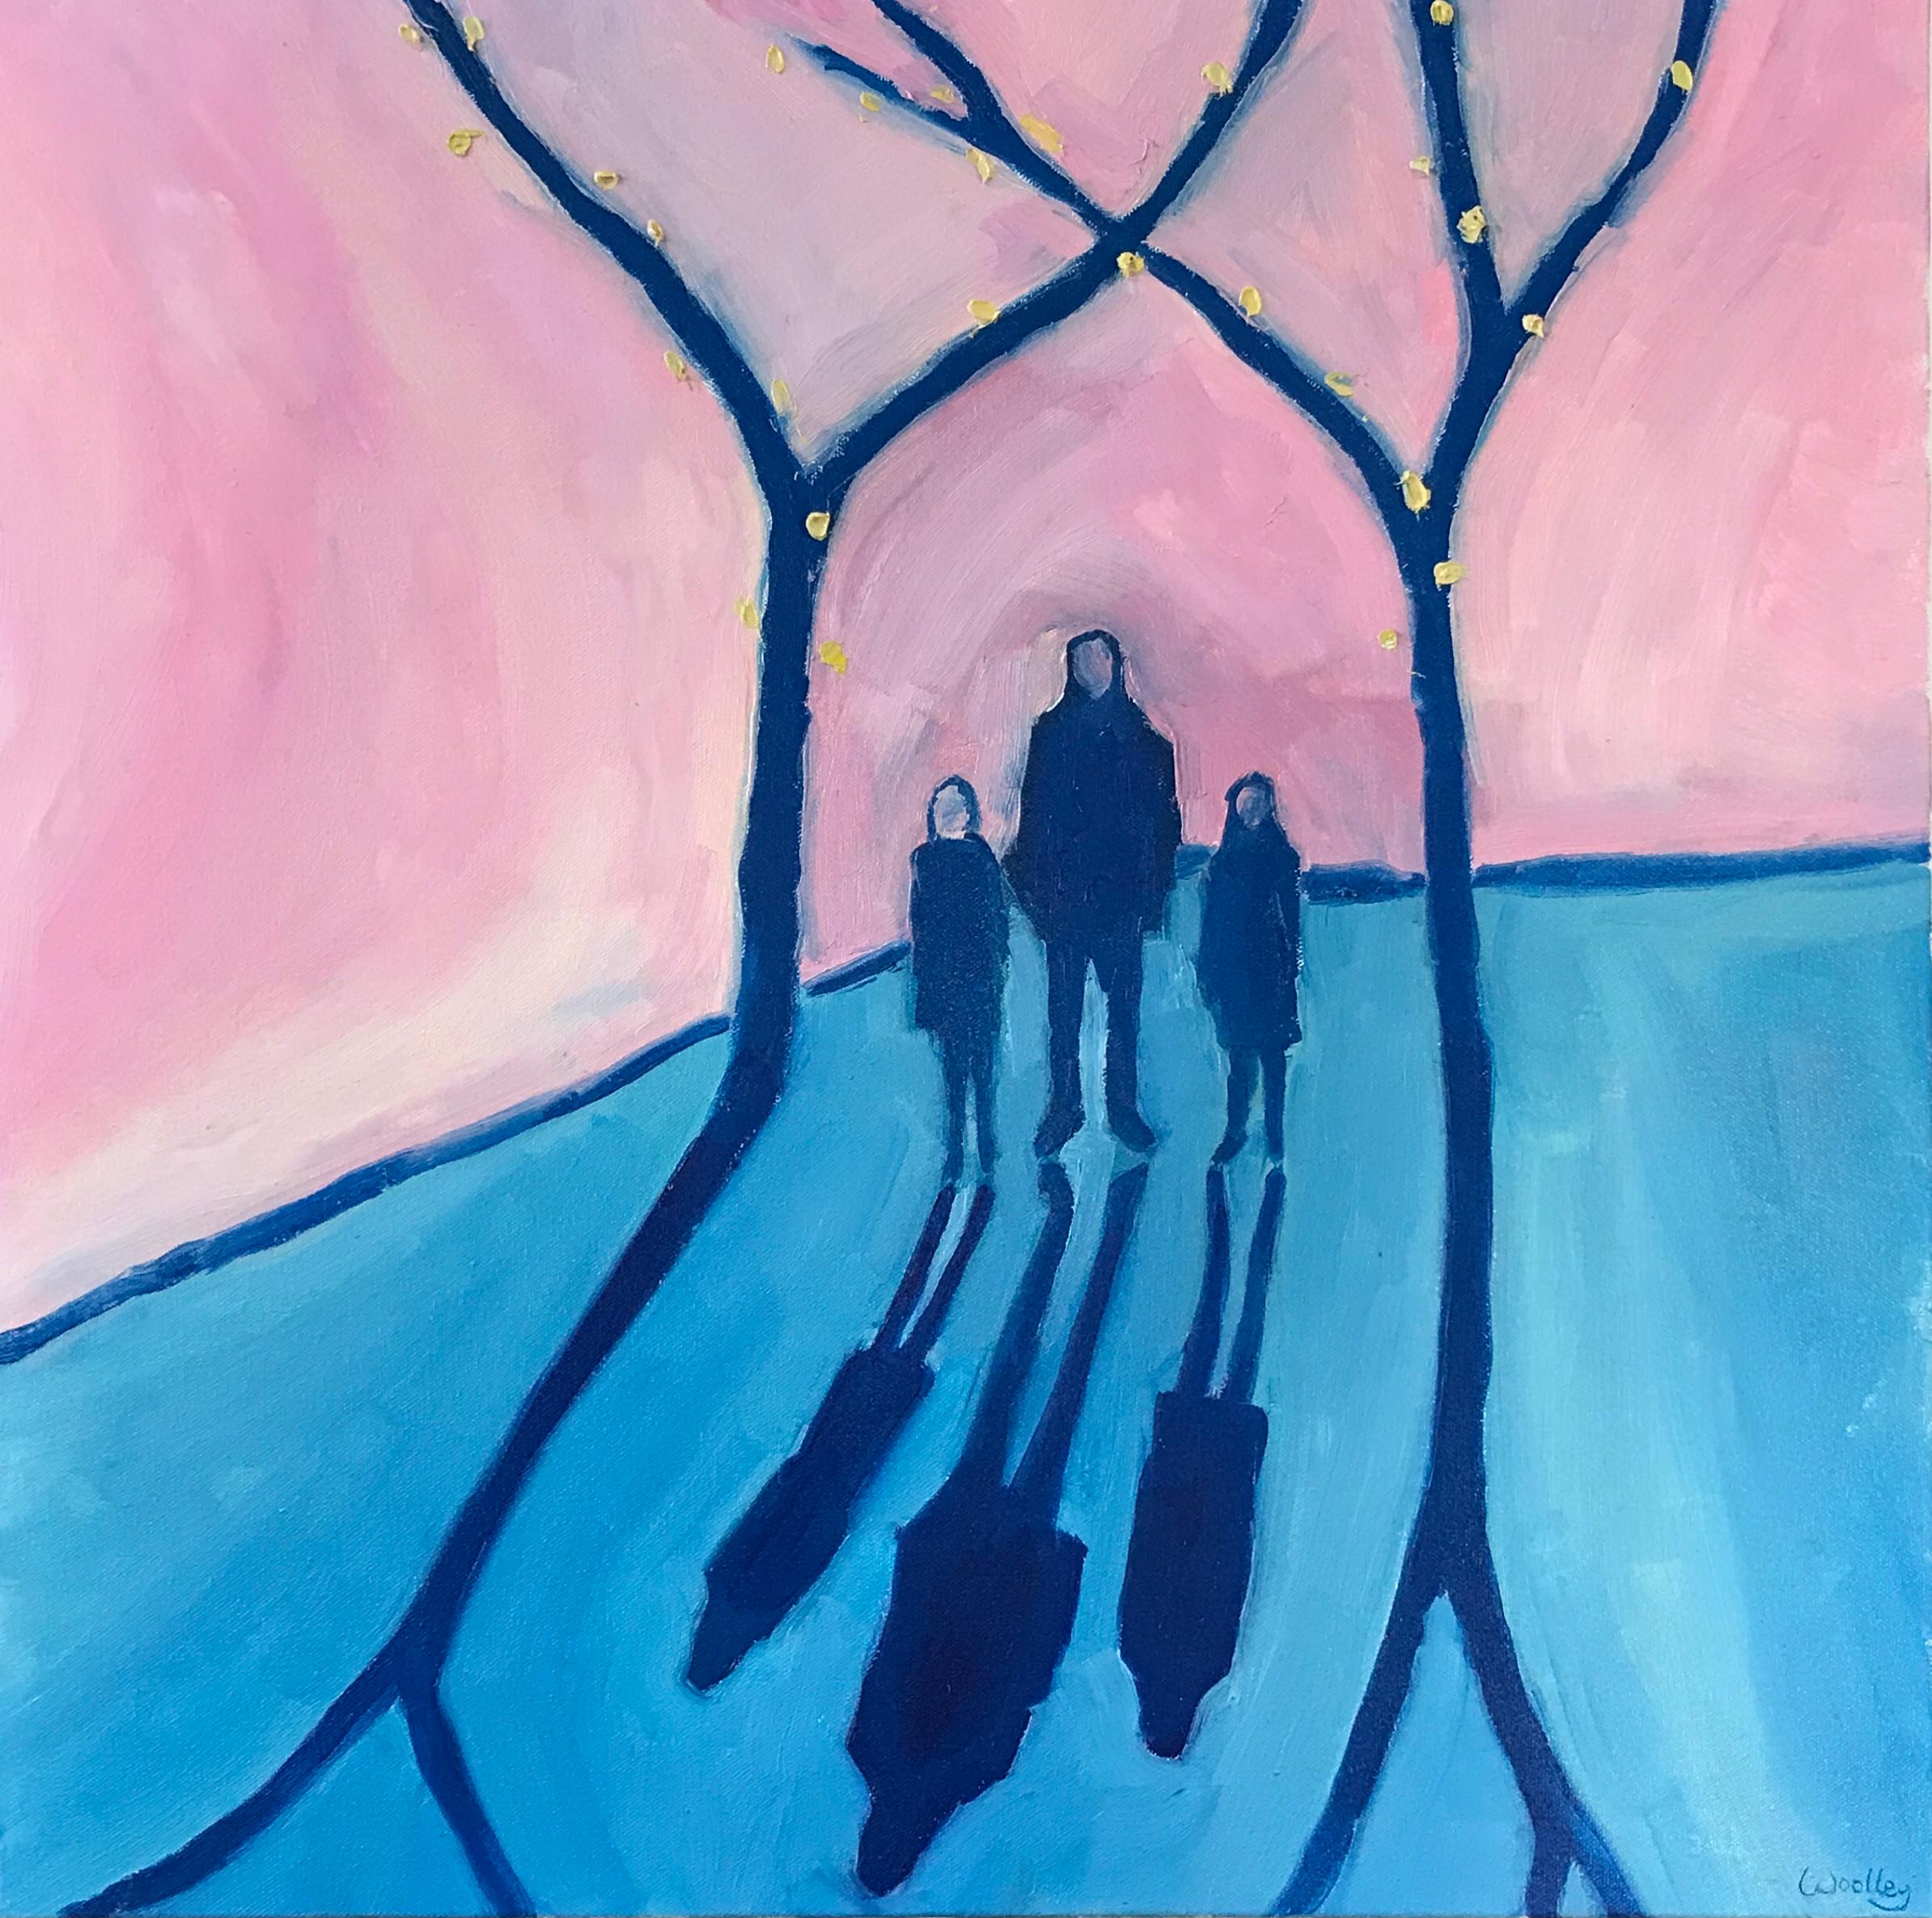 Cotswolds sunset 2 par Eleanor Woolley représente deux ombres lors d'une promenade dans le parc. Cette peinture est réalisée sur une toile de 60 x 60 cm et d'une profondeur de 4 cm. 

DES INFORMATIONS SUPPLÉMENTAIRES :
Peinture à l'huile sur